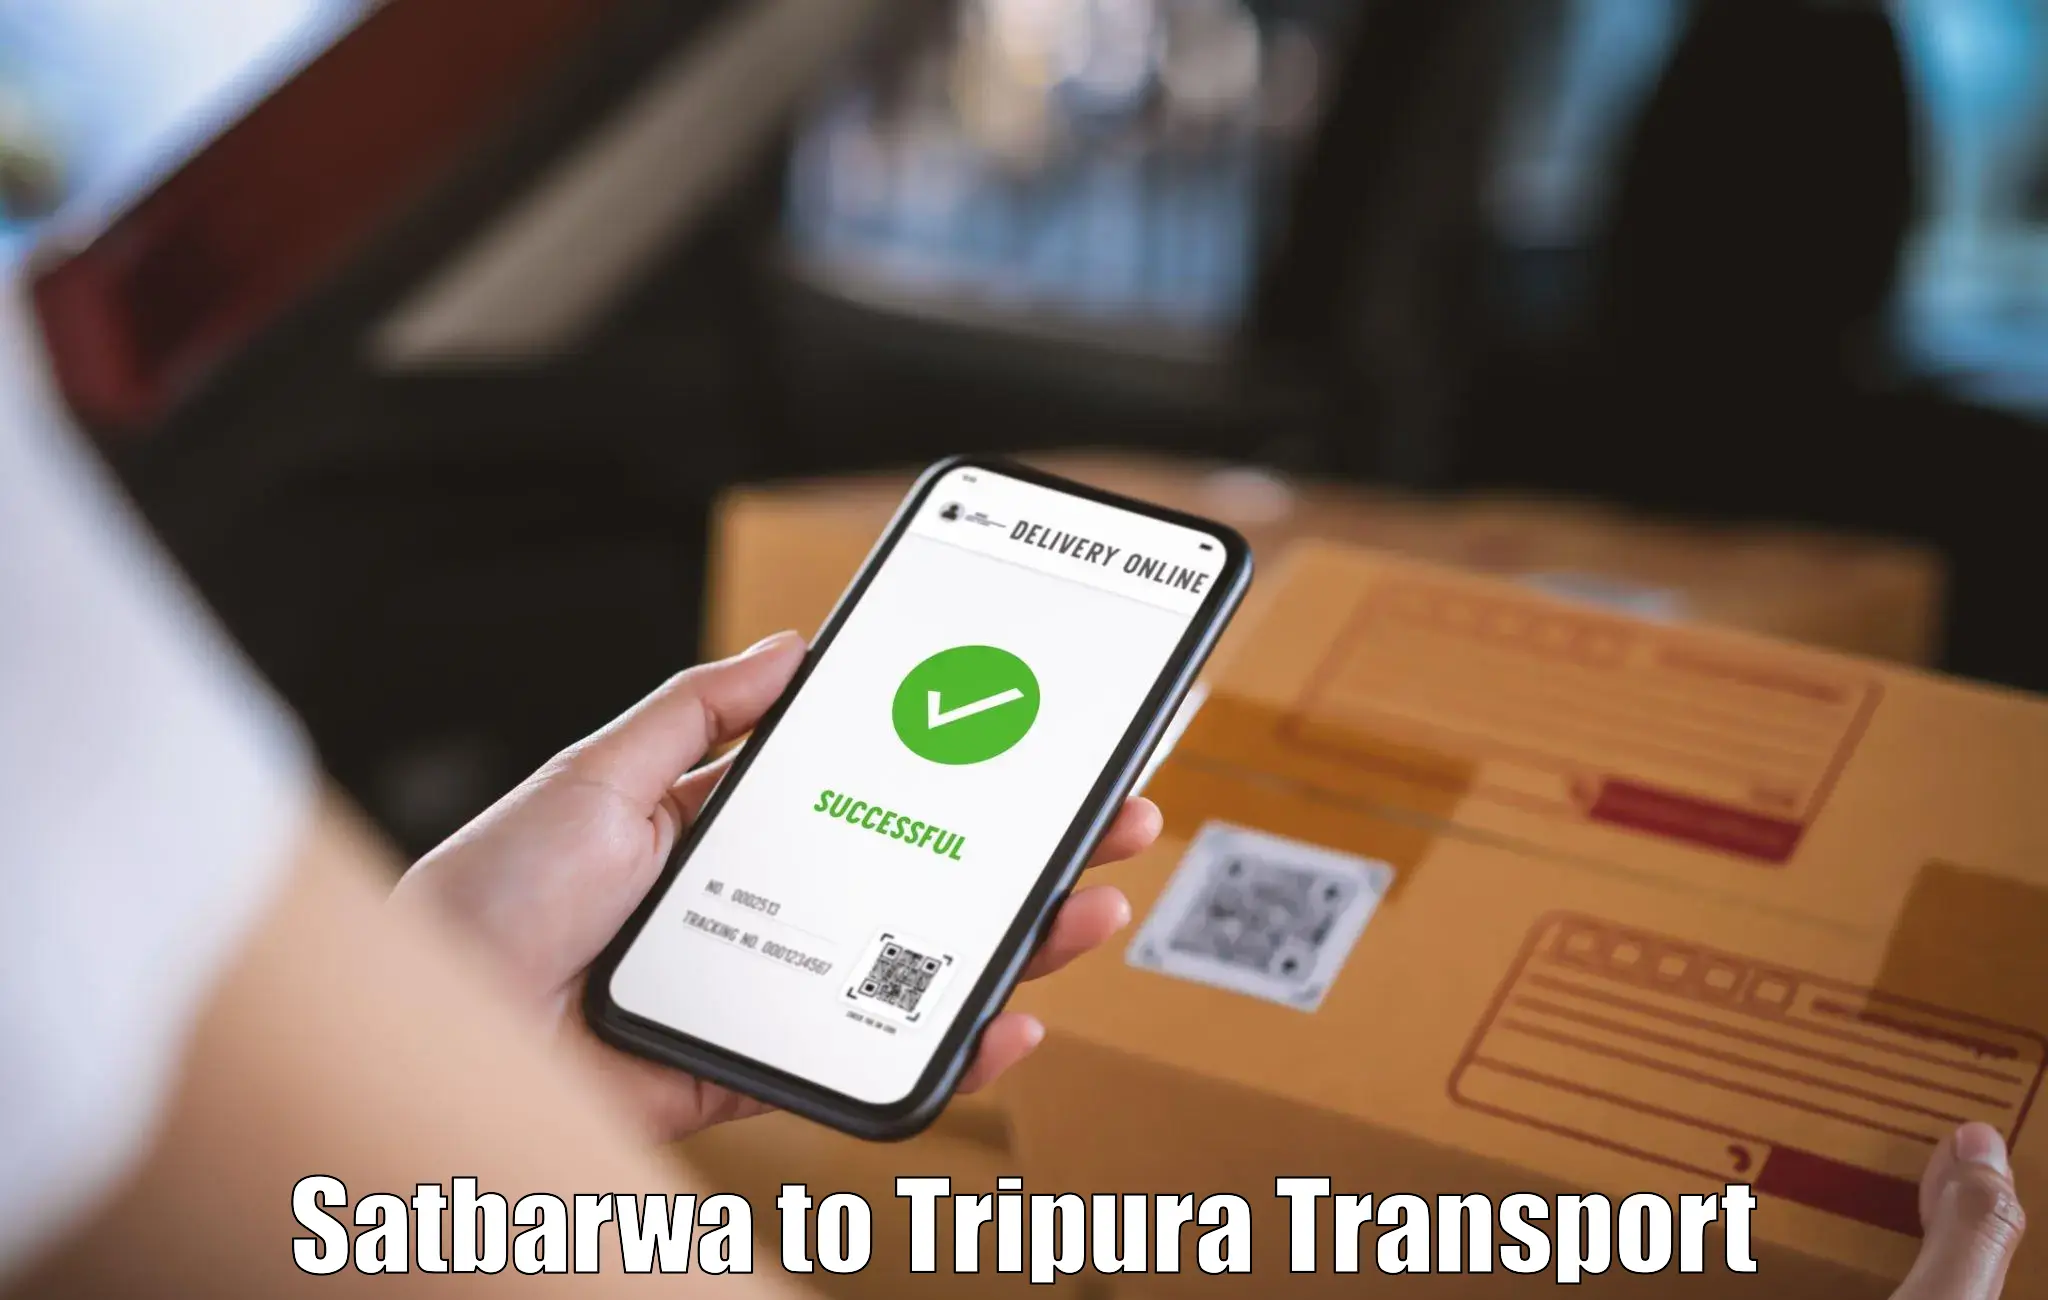 Vehicle transport services Satbarwa to IIIT Agartala